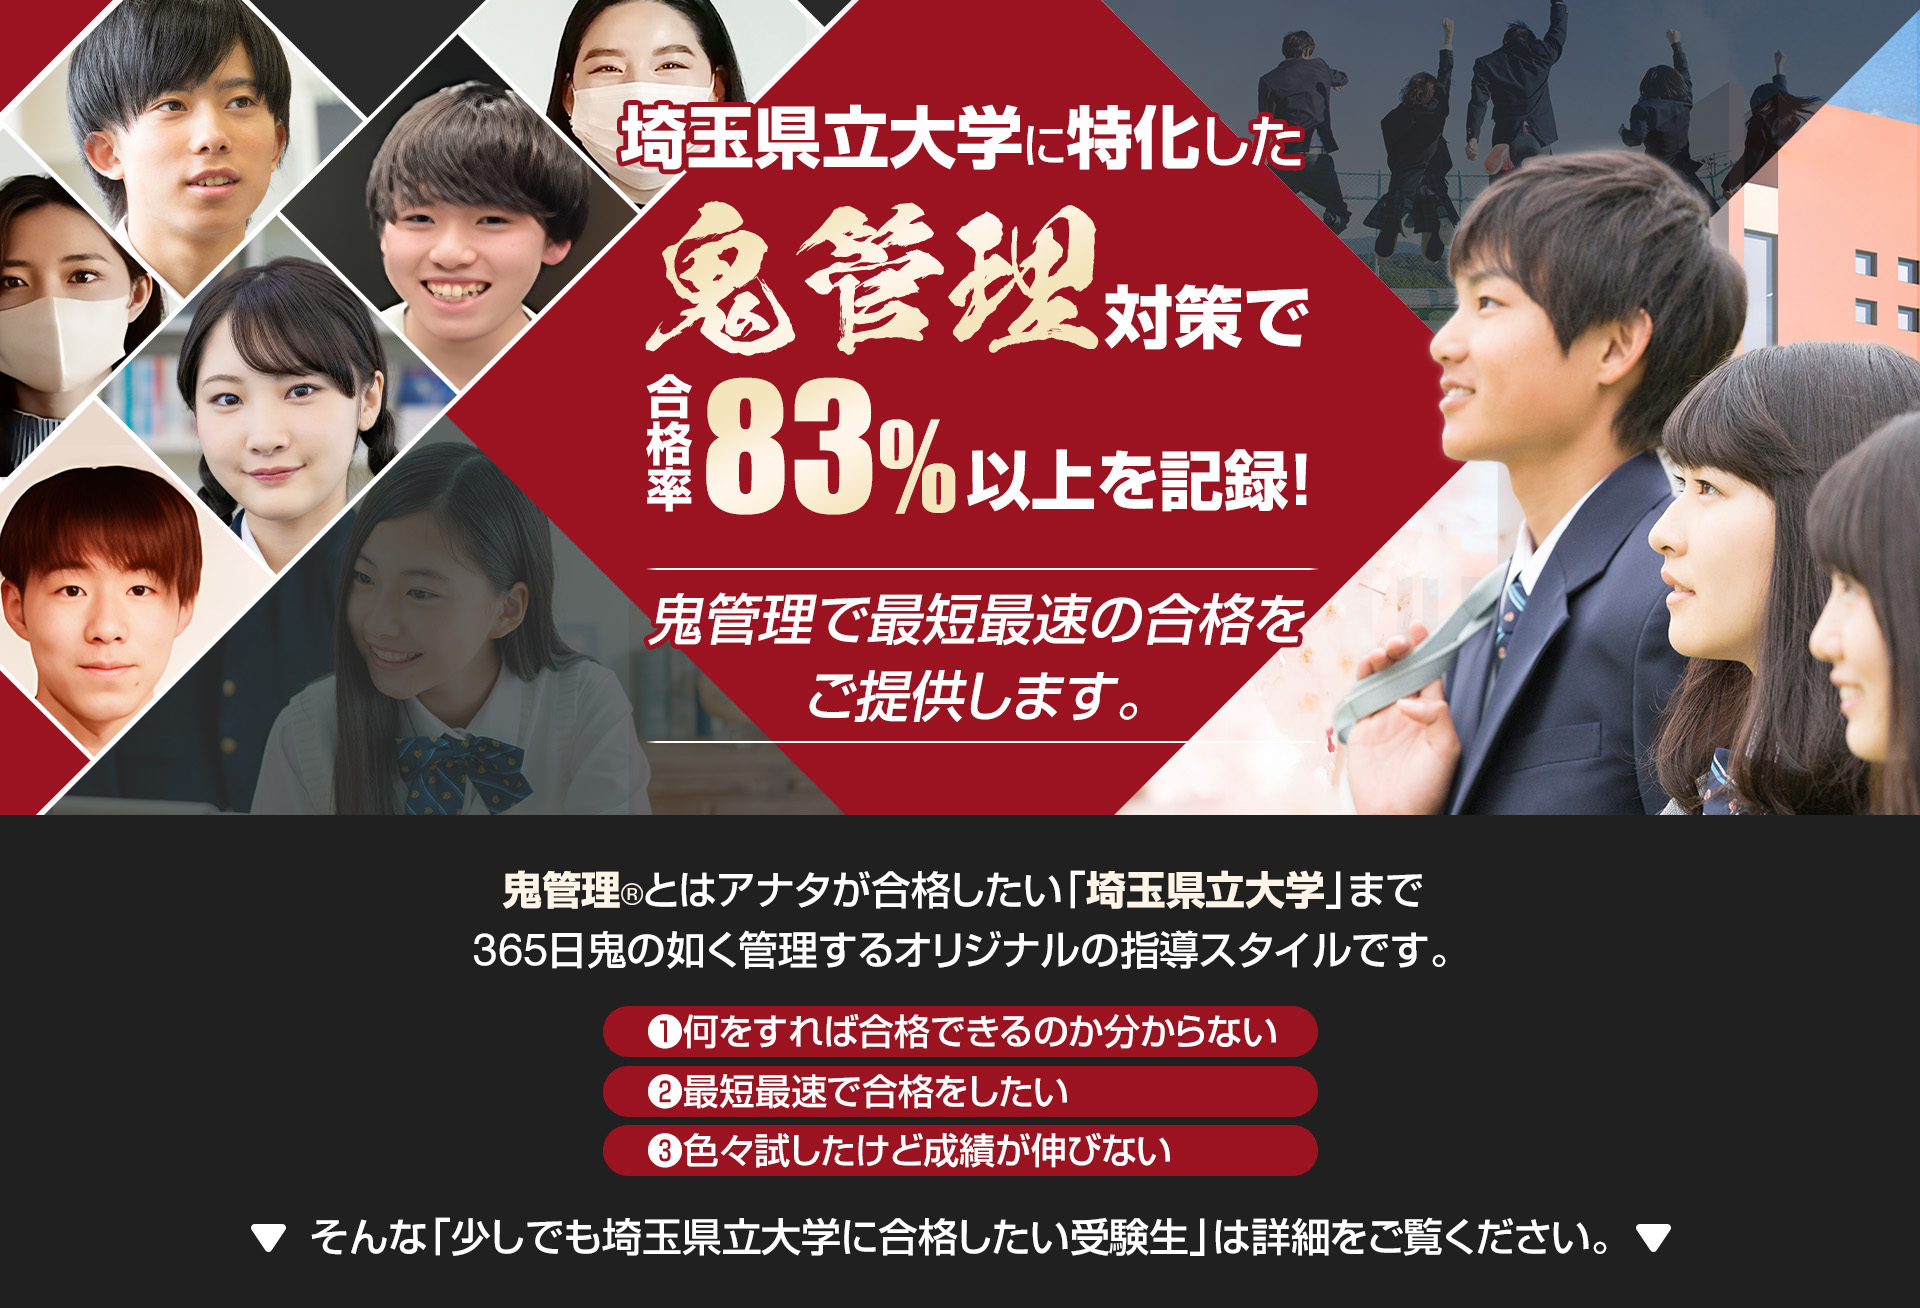 埼玉県立大学に特化した鬼管理対策で合格率83％以上を記録。鬼管理でアナタが合格したい埼玉県立大学への最短最速の合格を提供します。